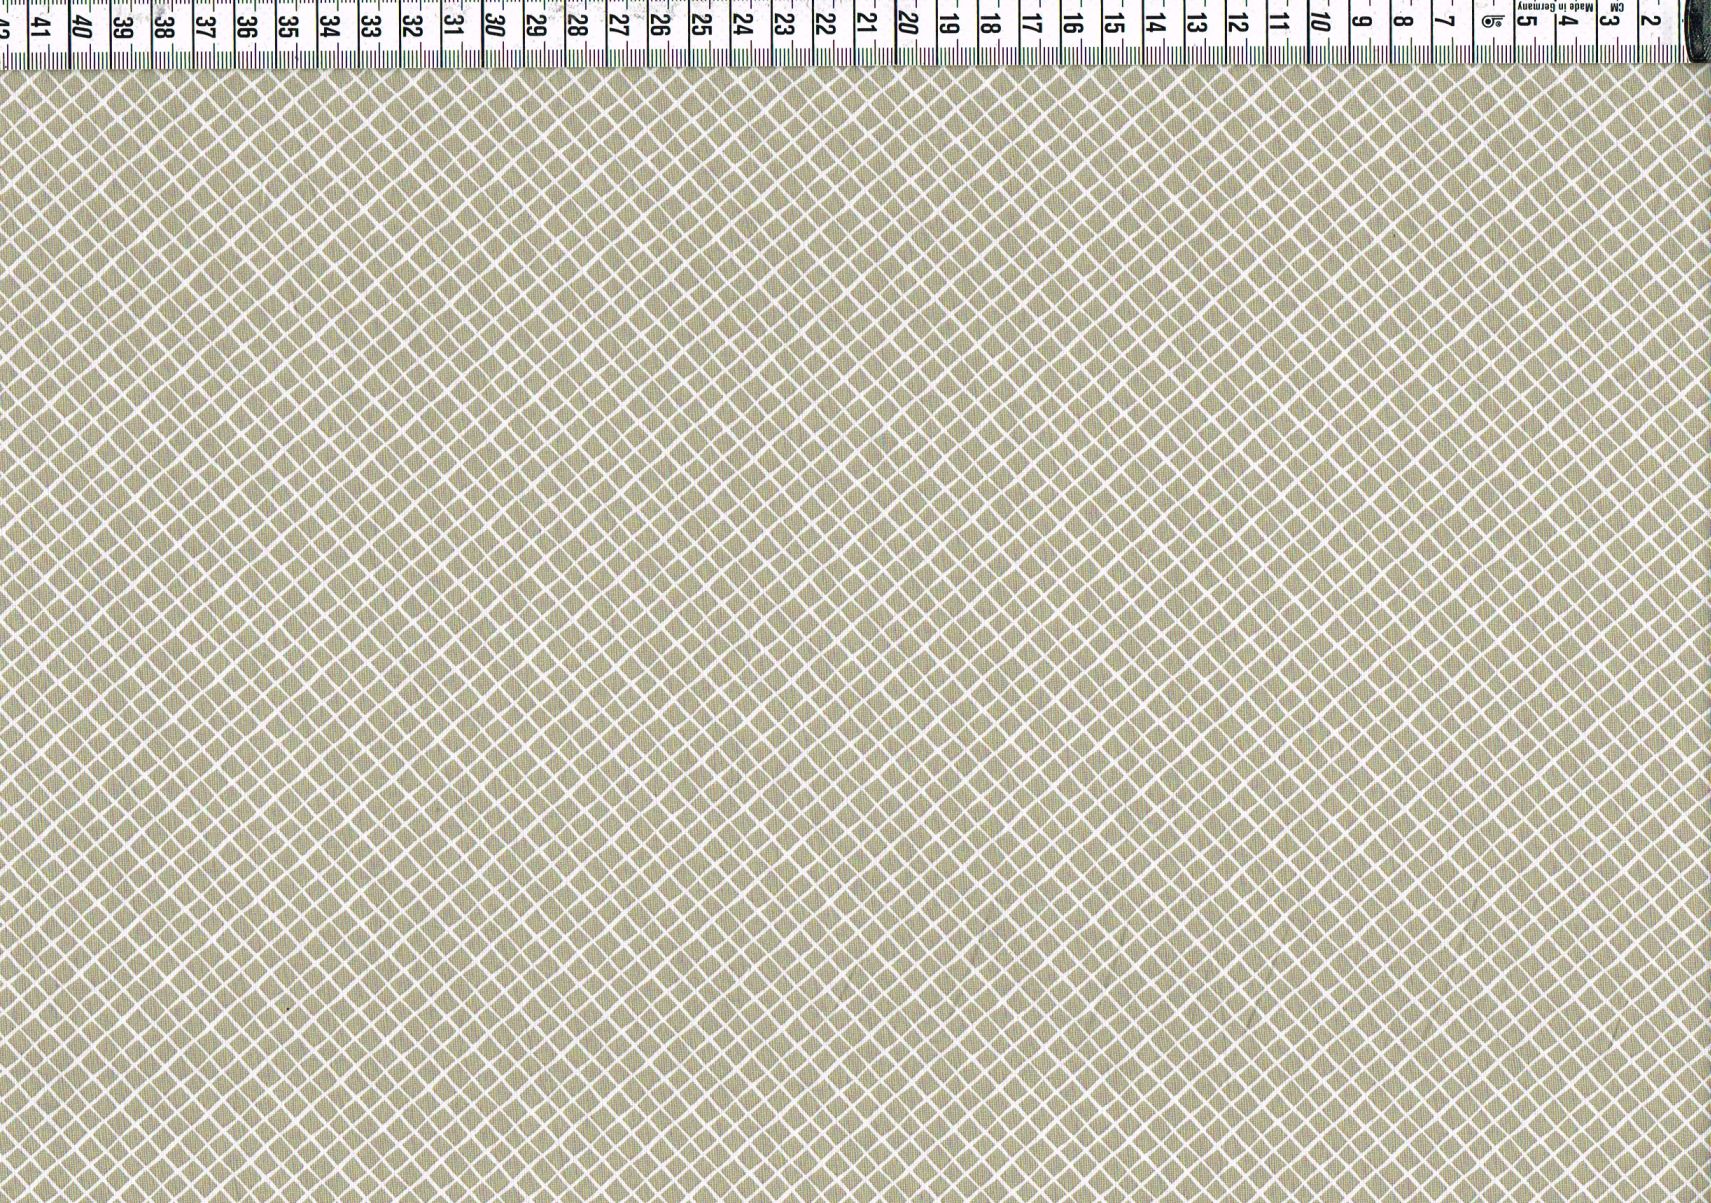 Baumwollgewebe - kleine Rauten grau-beige/weiß